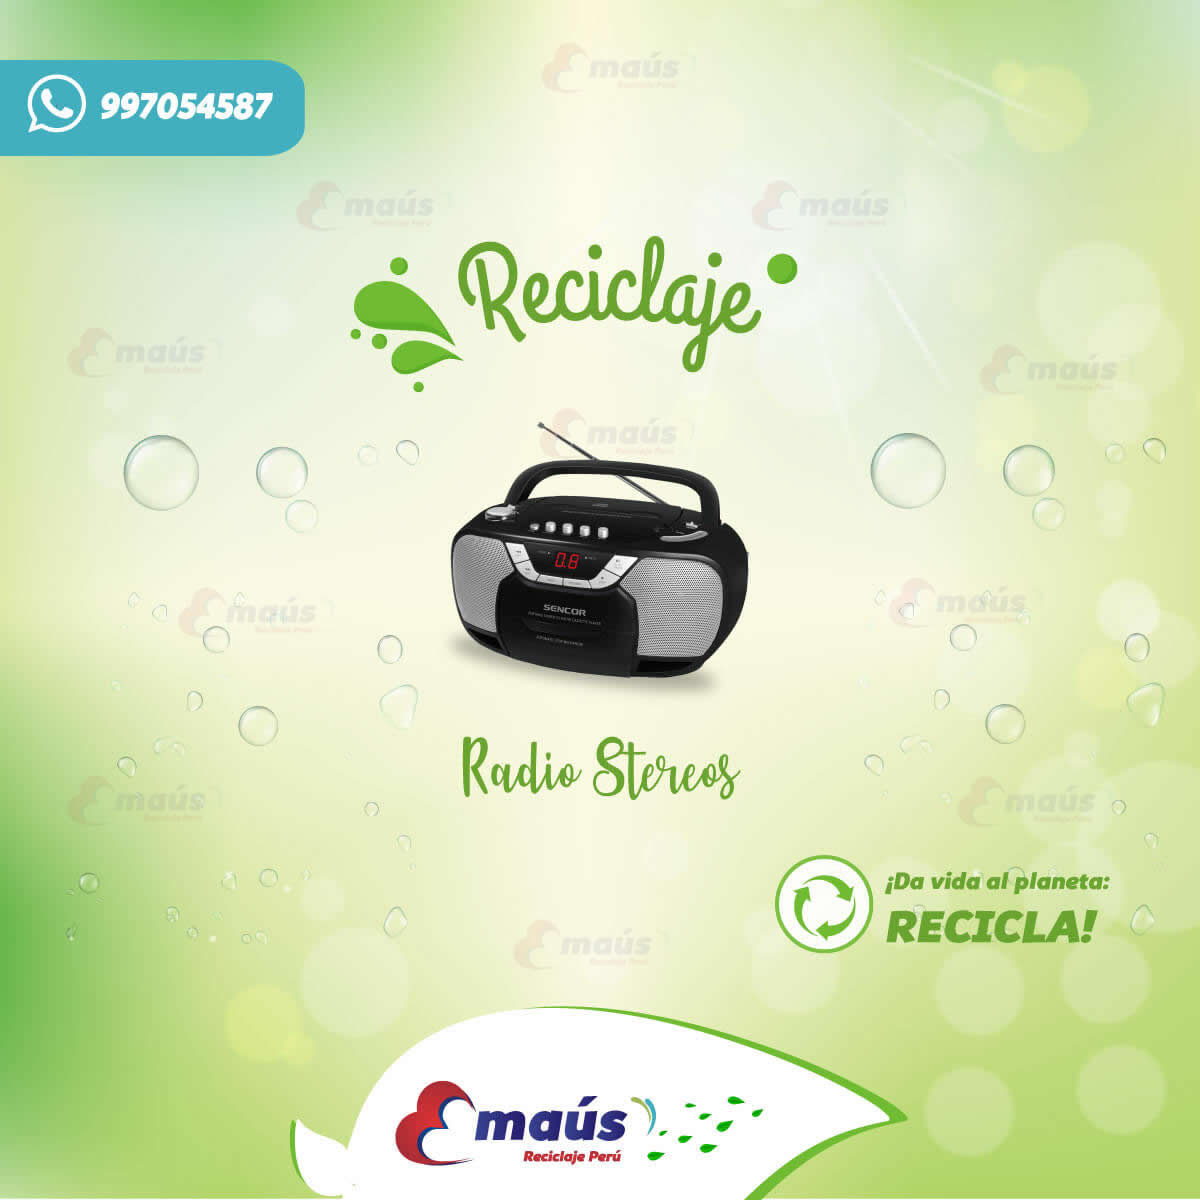 Recicla radios stereos